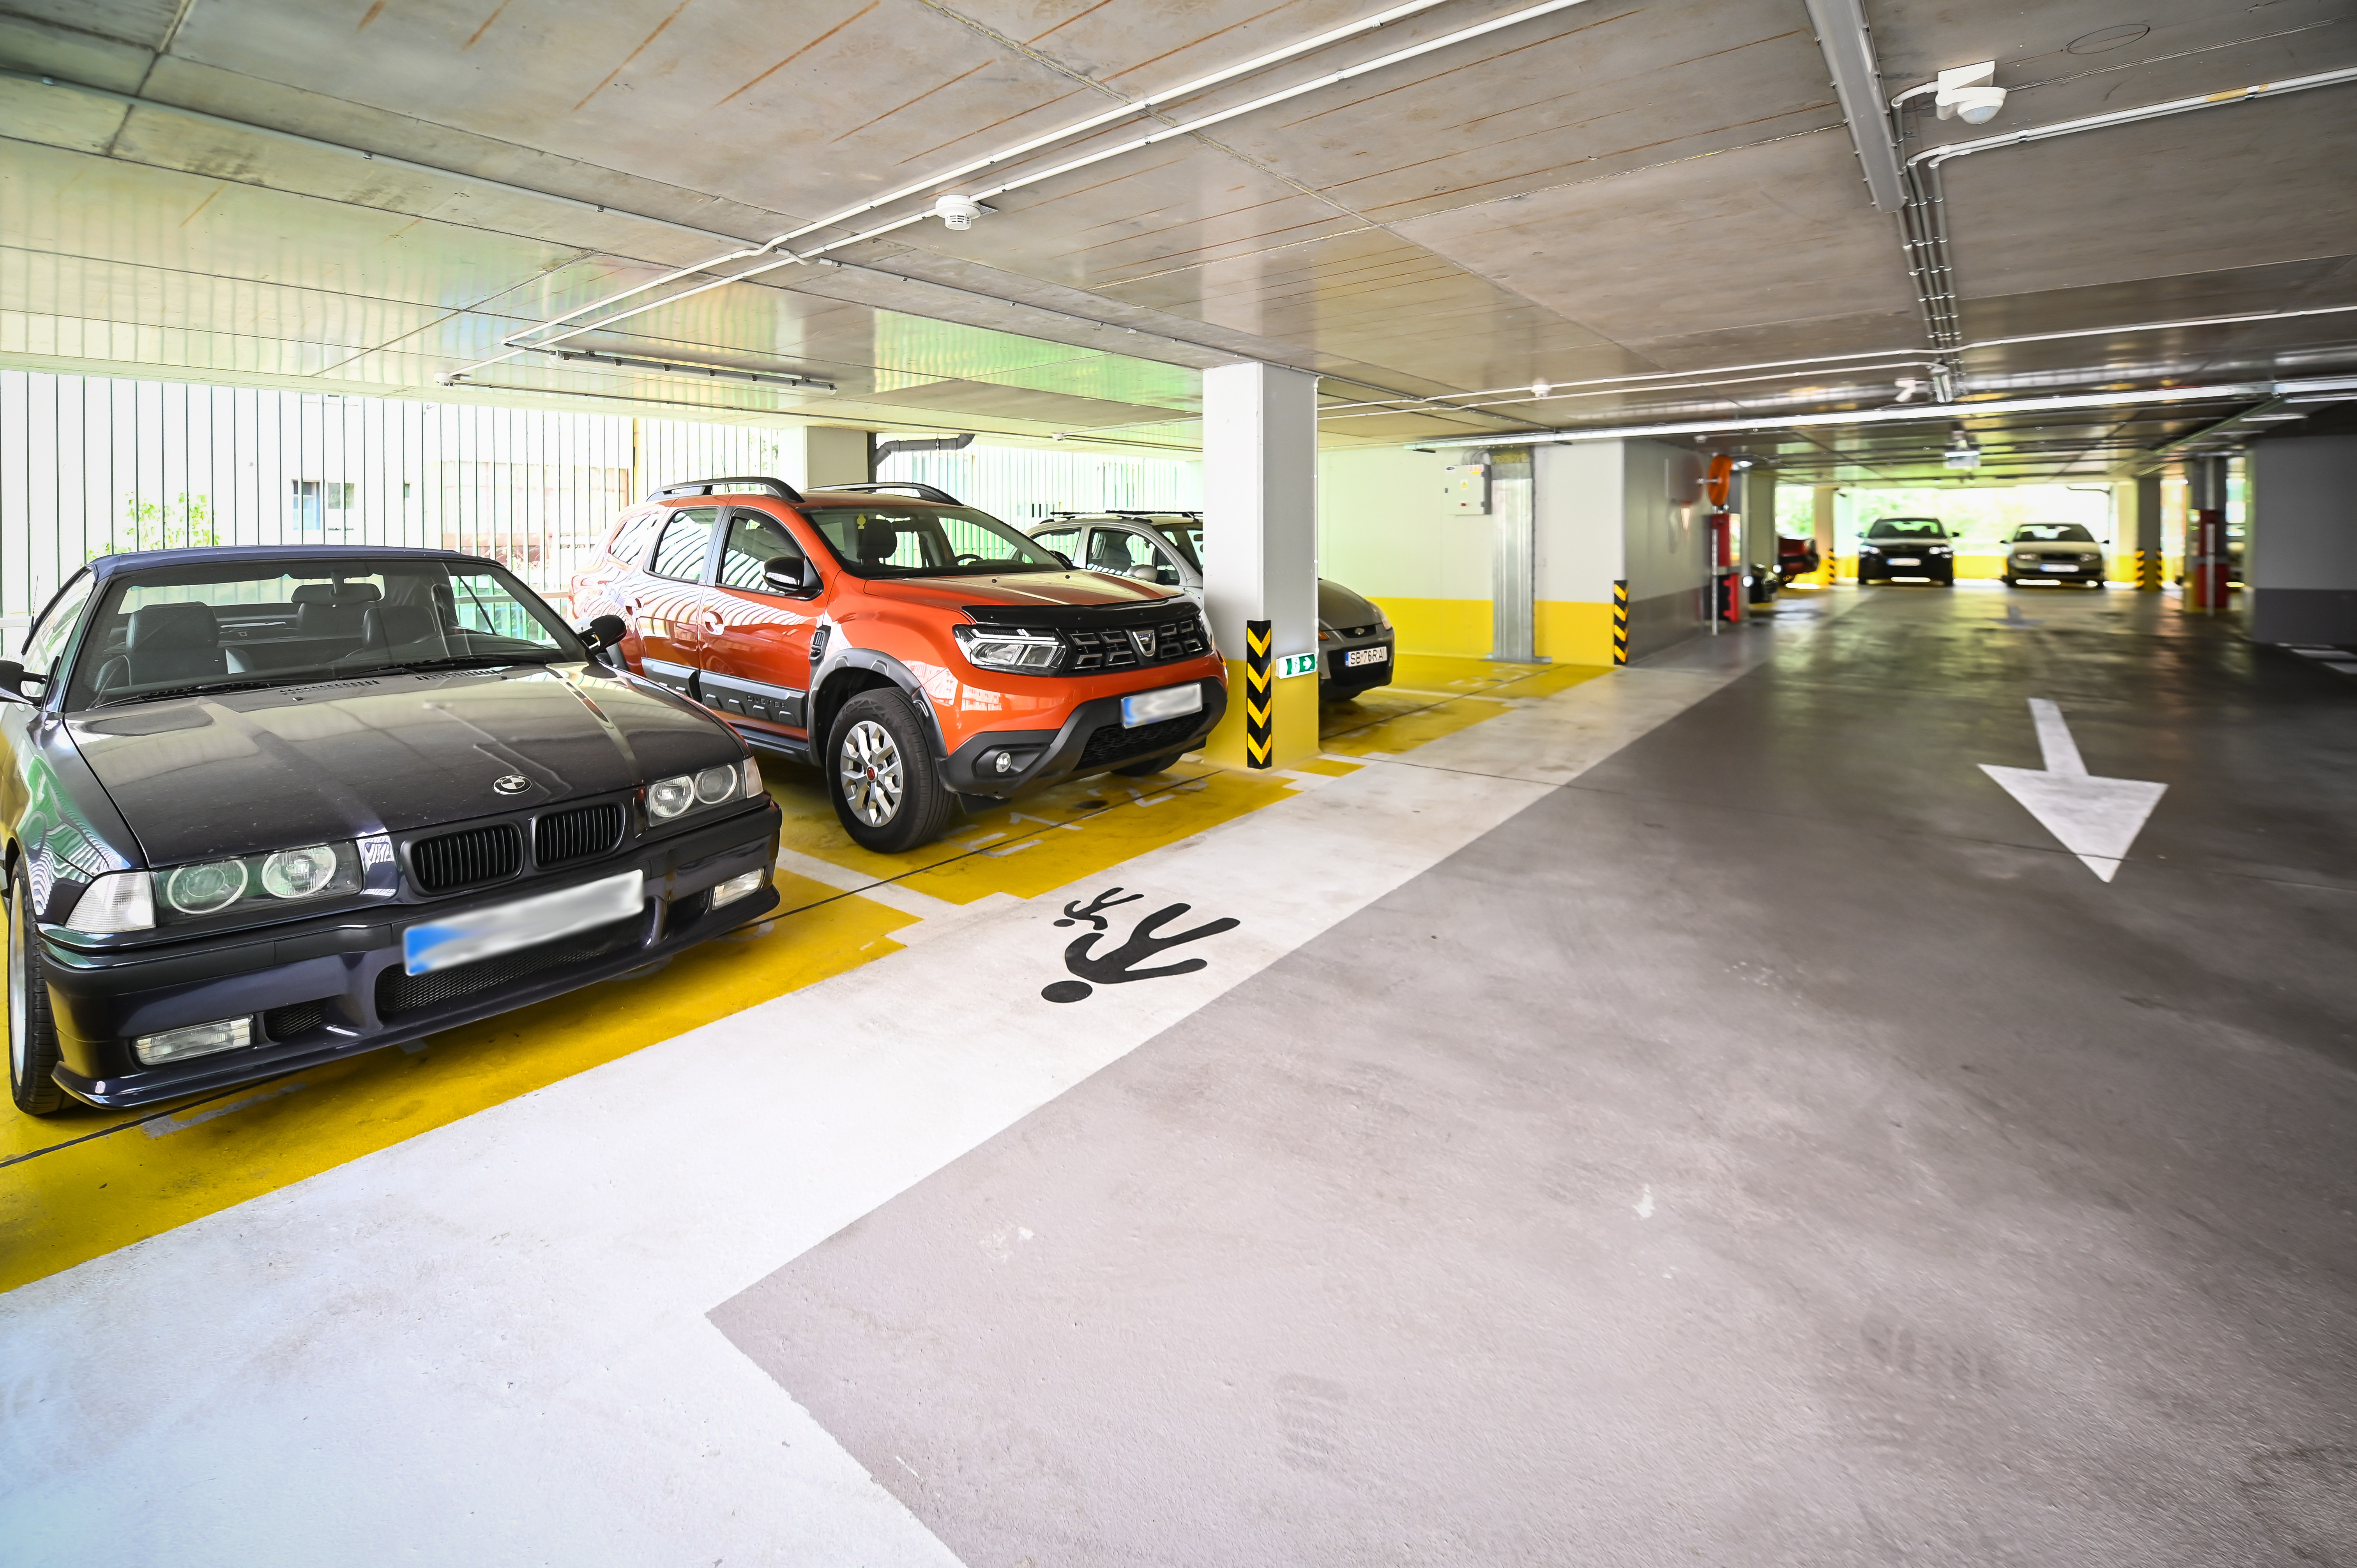 Primăria Sibiu anunță construcția unei parcări subterane pe strada Siretului. 5 oferte primite